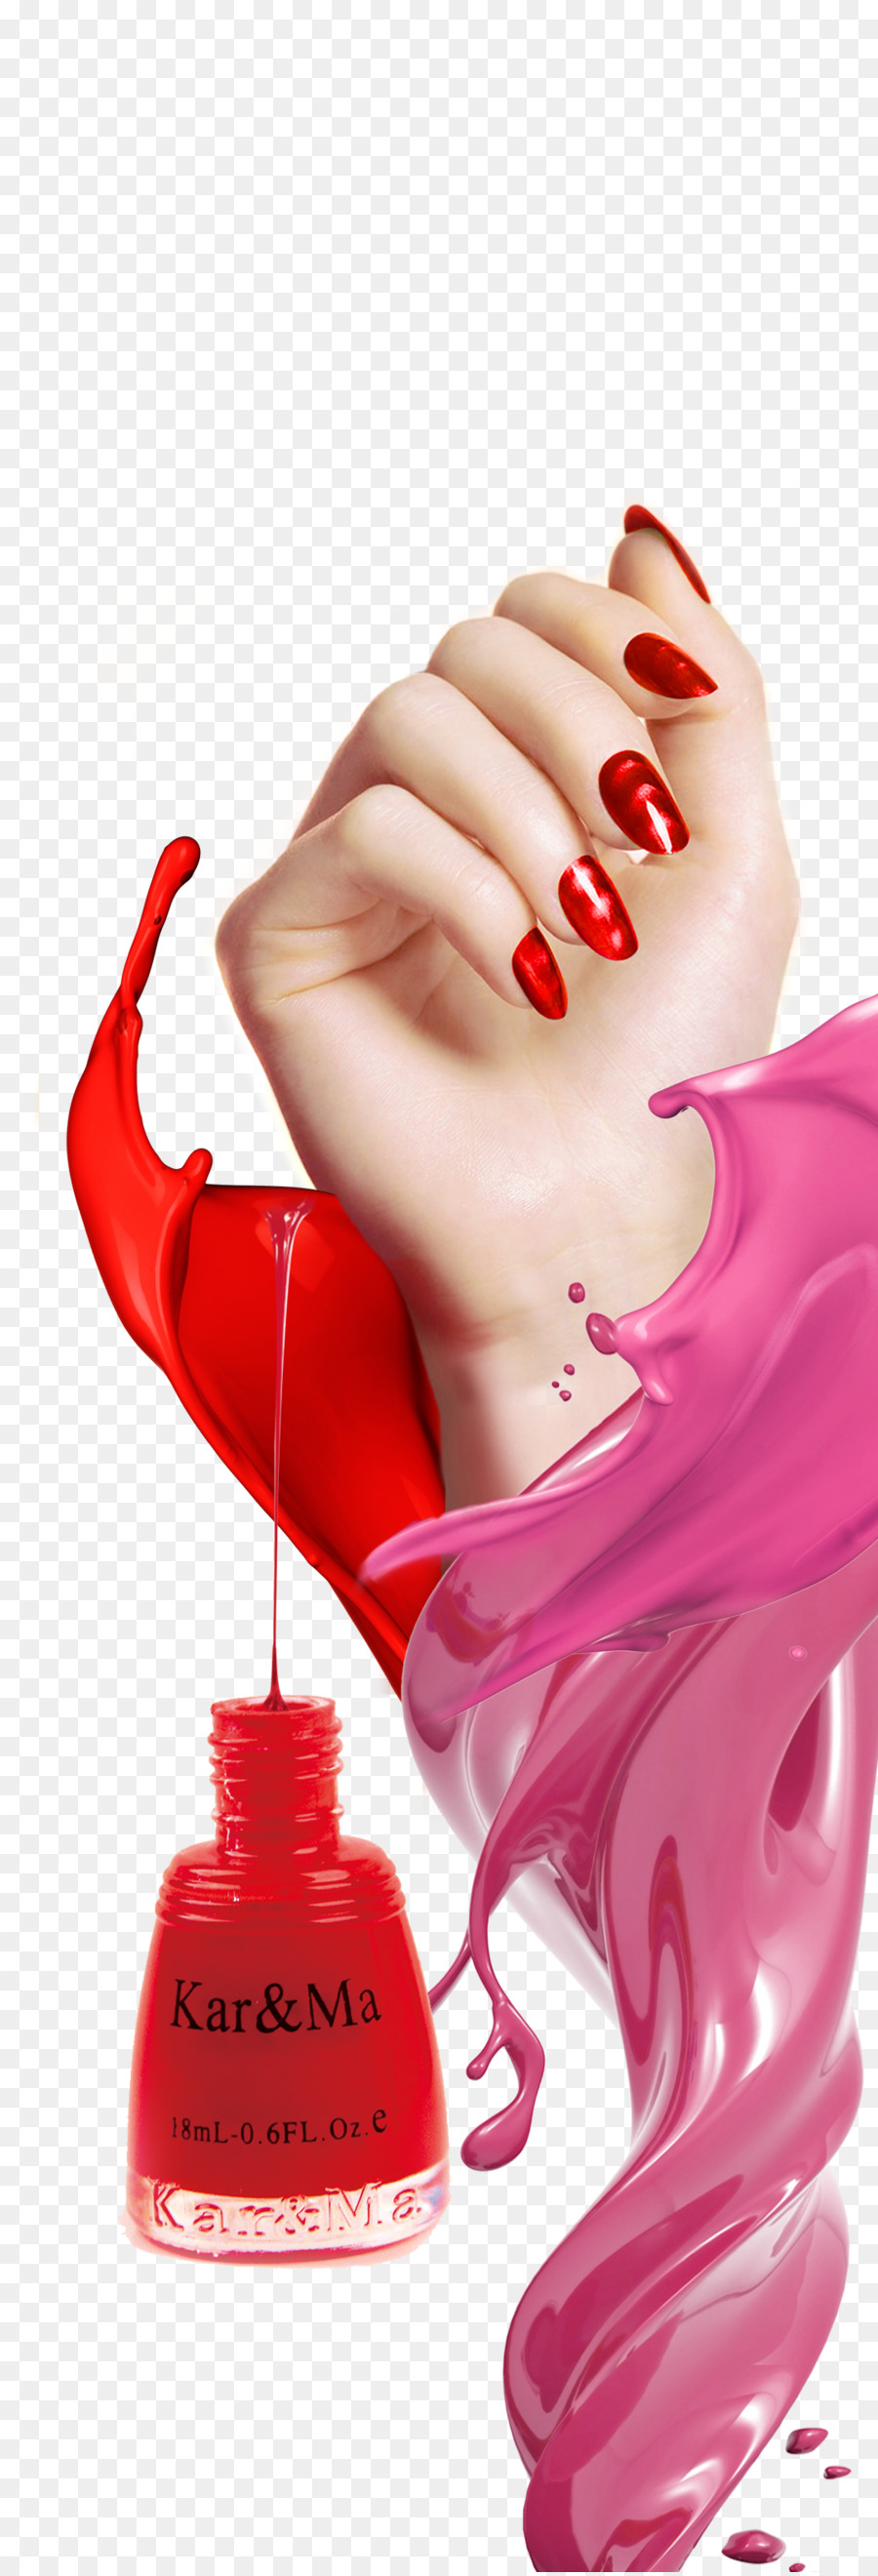 Nail art Poster di smalto per Unghie Manicure - manifesto creativo dello smalto per unghie